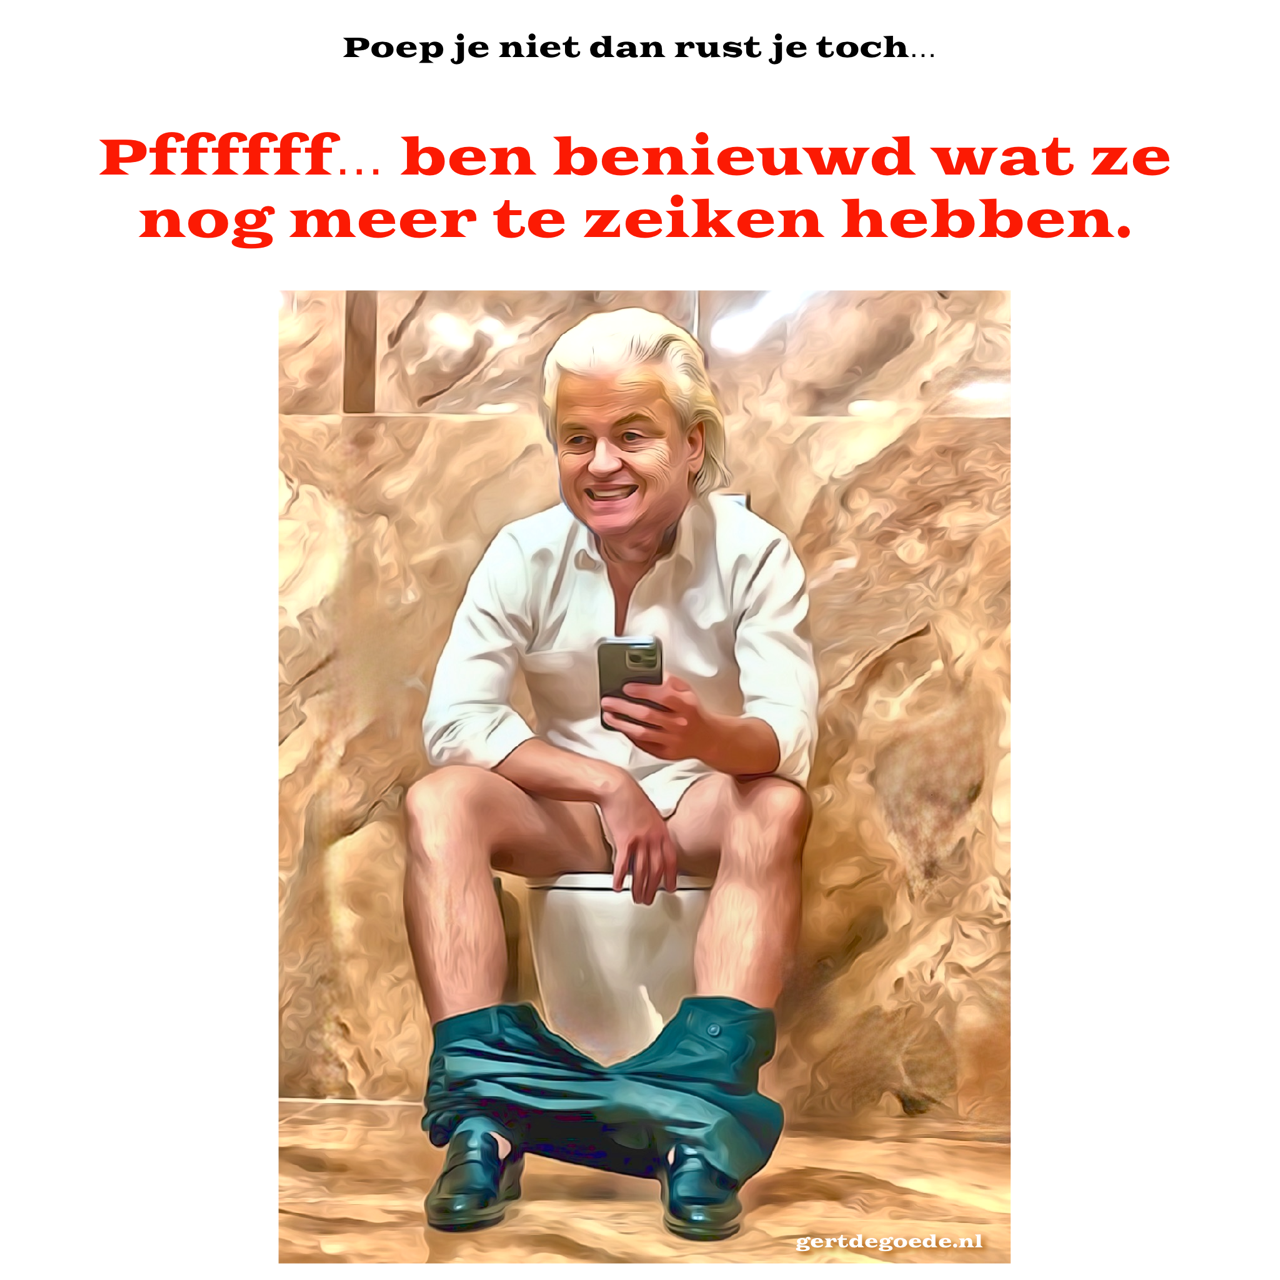 Hilversum Ronald Plasterk Geert Wilders wetsvoorstellen PVV tweede kamer verkiezingen kabinet formatie formateur